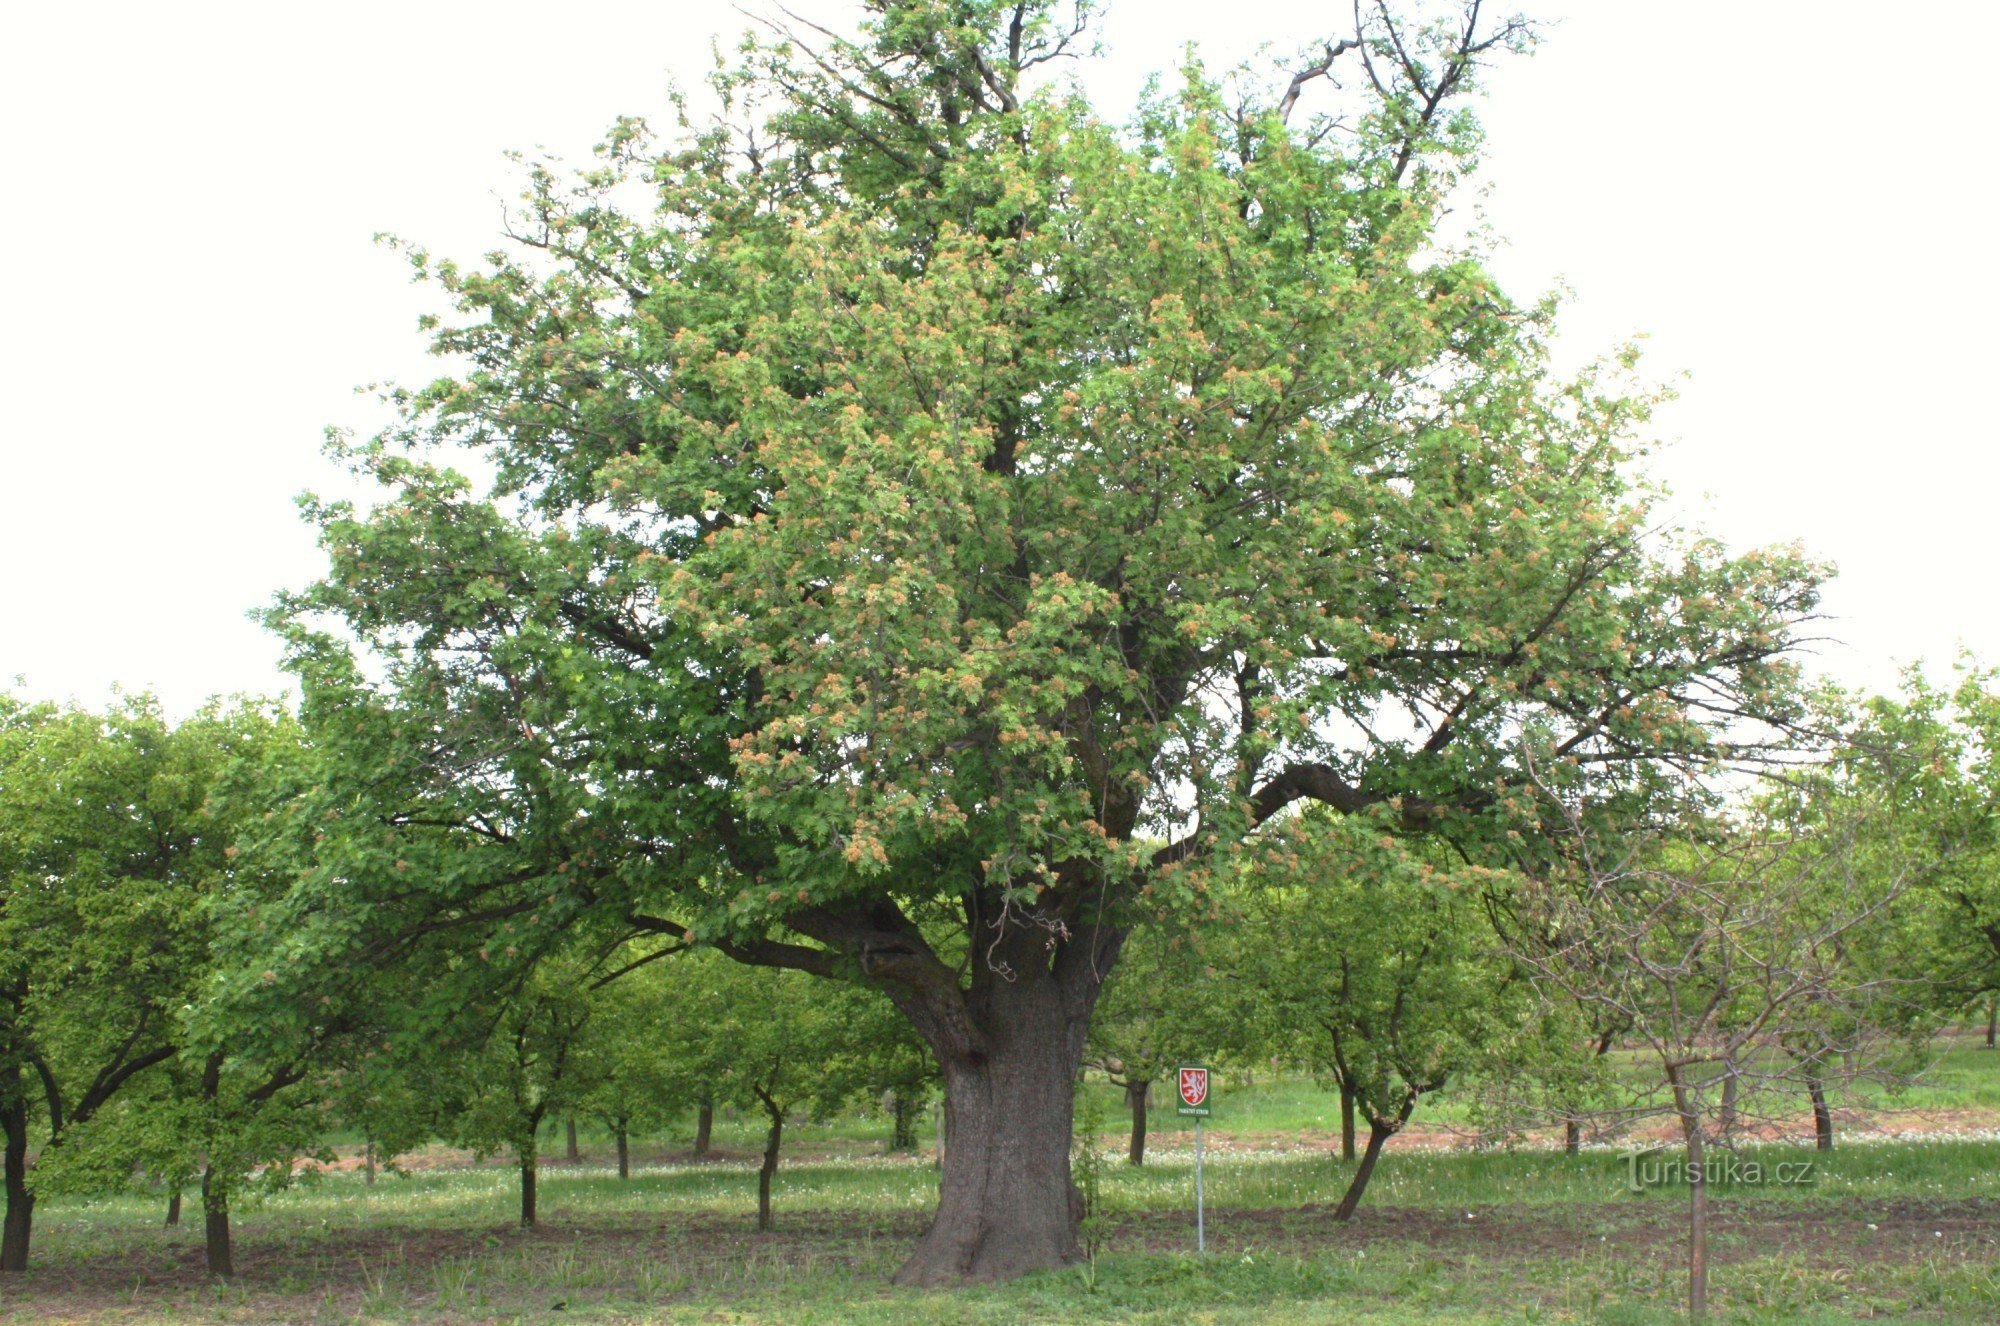 Nemčičky - et mindeværdigt kirsebærtræ